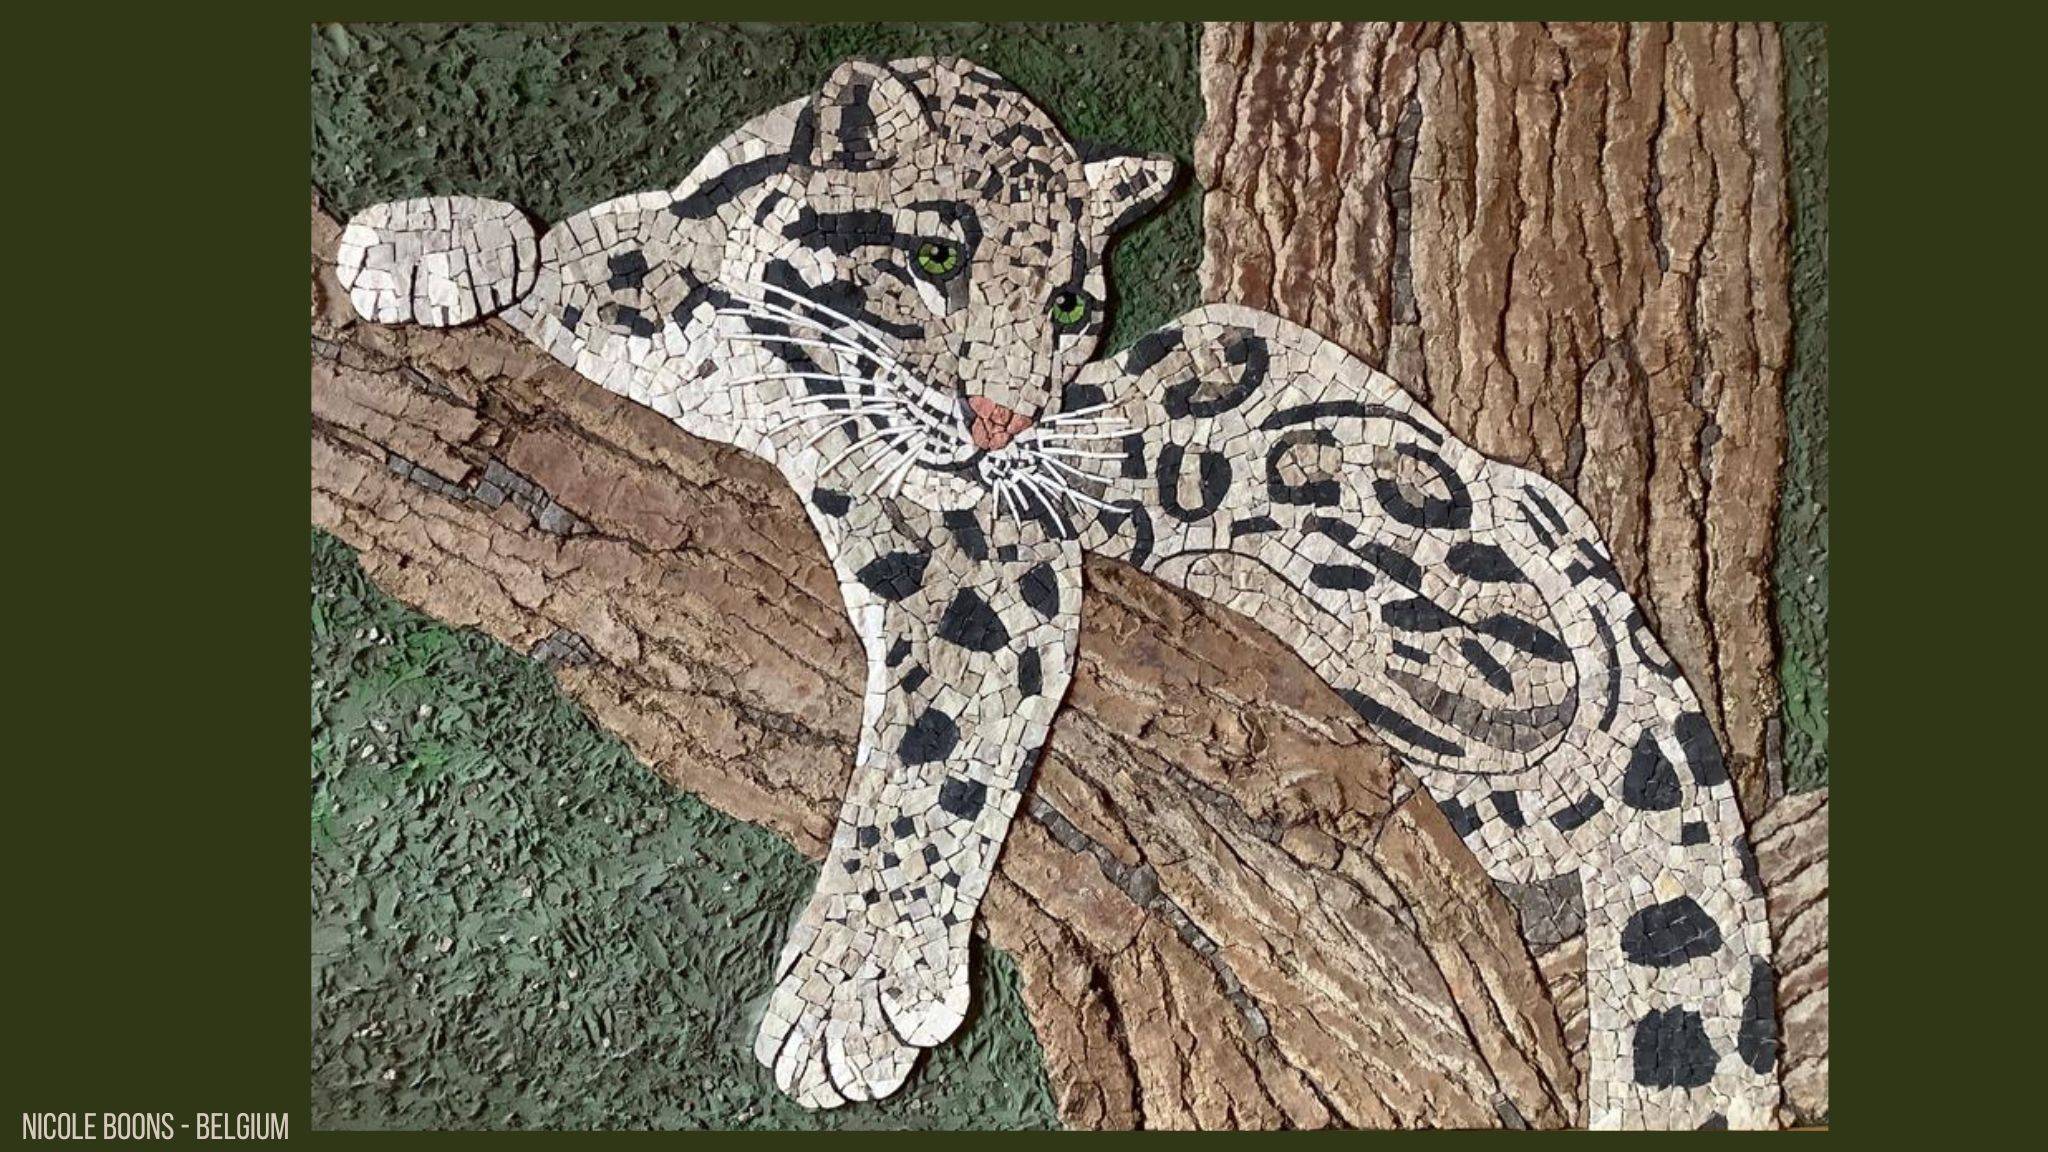 Mozaiek van een luipaard rustend op en tak in een boom. Luipaard is in marmer gemaakt, boom en tak van boomschors. 